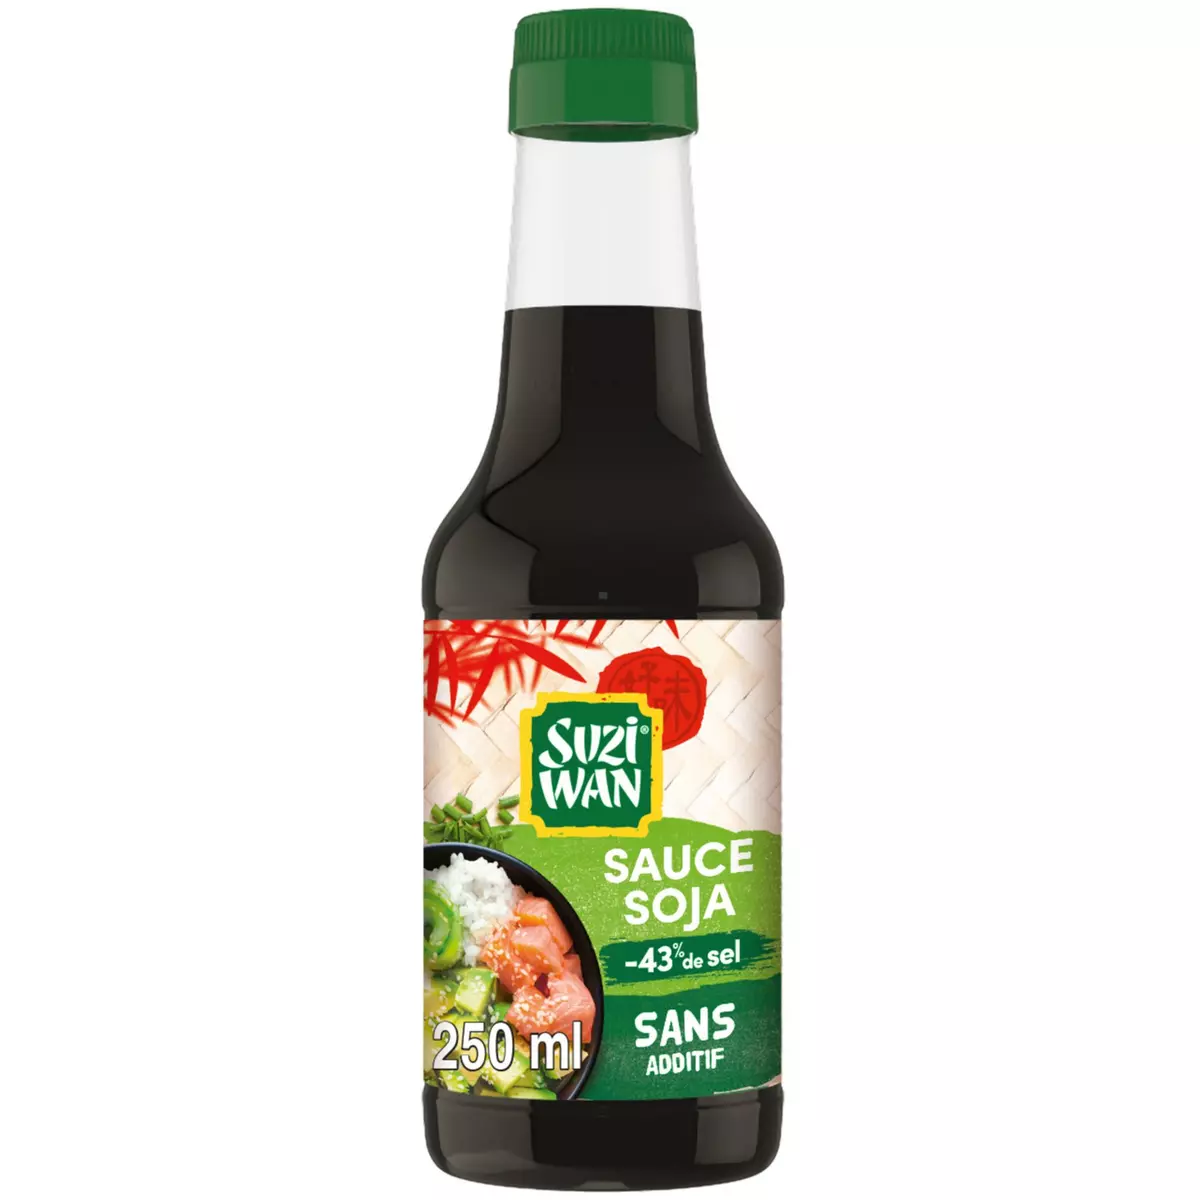 SUZI WAN Sauce soja allégé en sel 250ml